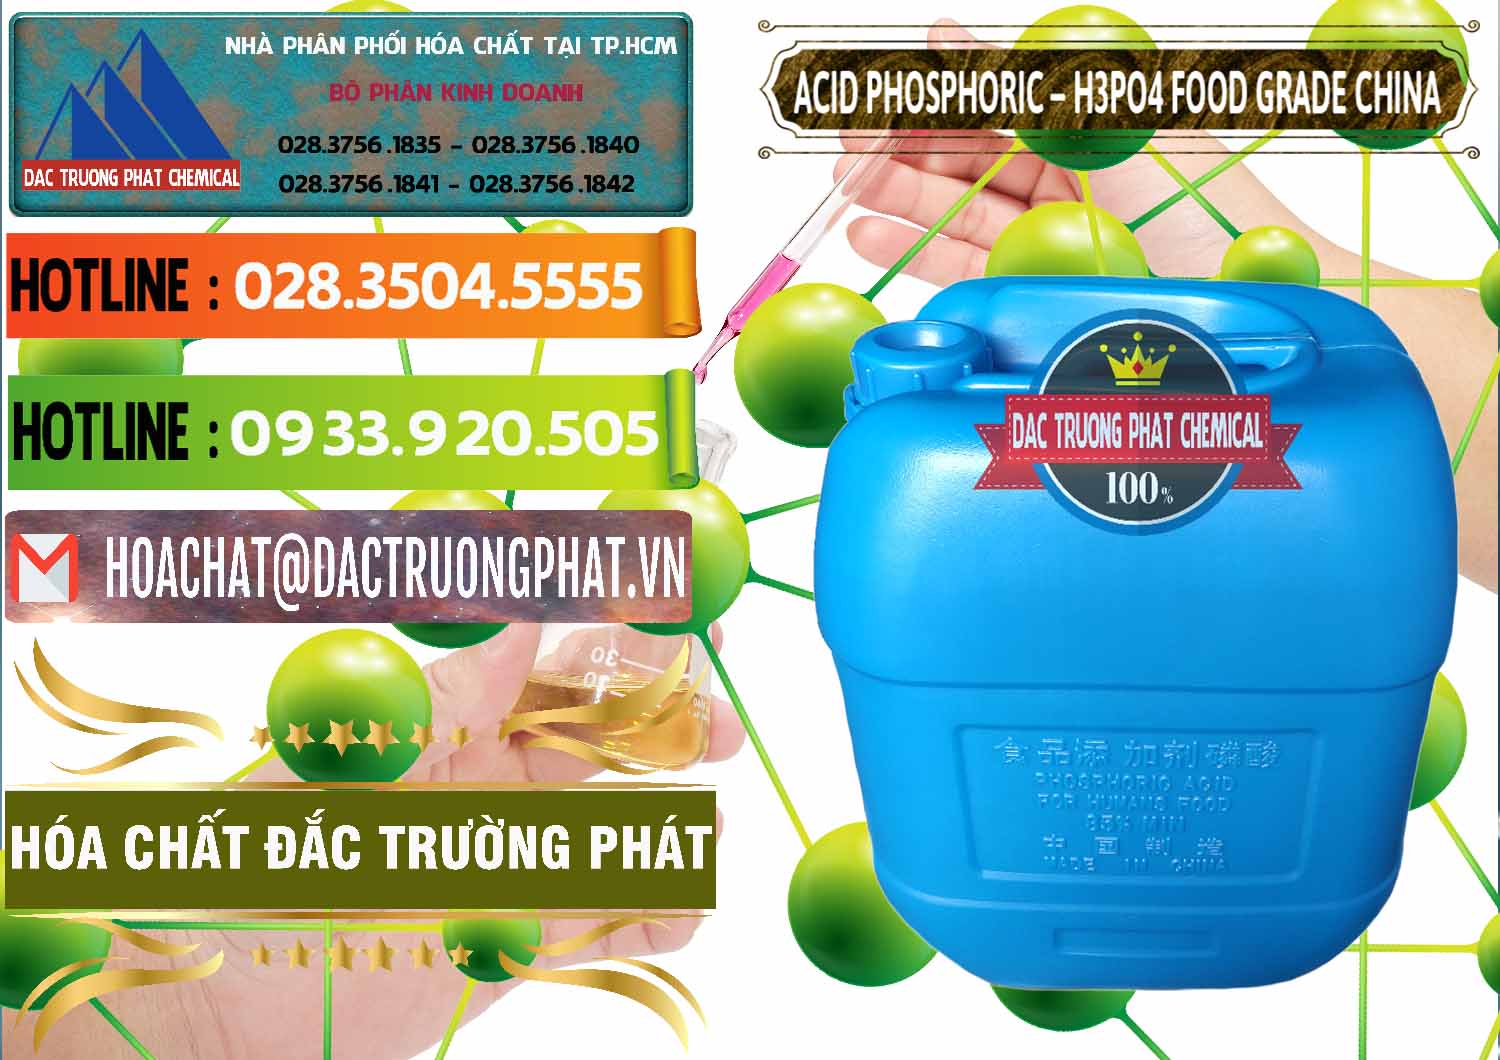 Nơi chuyên cung cấp & bán Acid Phosphoric – H3PO4 85% Food Grade Trung Quốc China - 0015 - Công ty chuyên cung cấp _ bán hóa chất tại TP.HCM - cungcaphoachat.com.vn